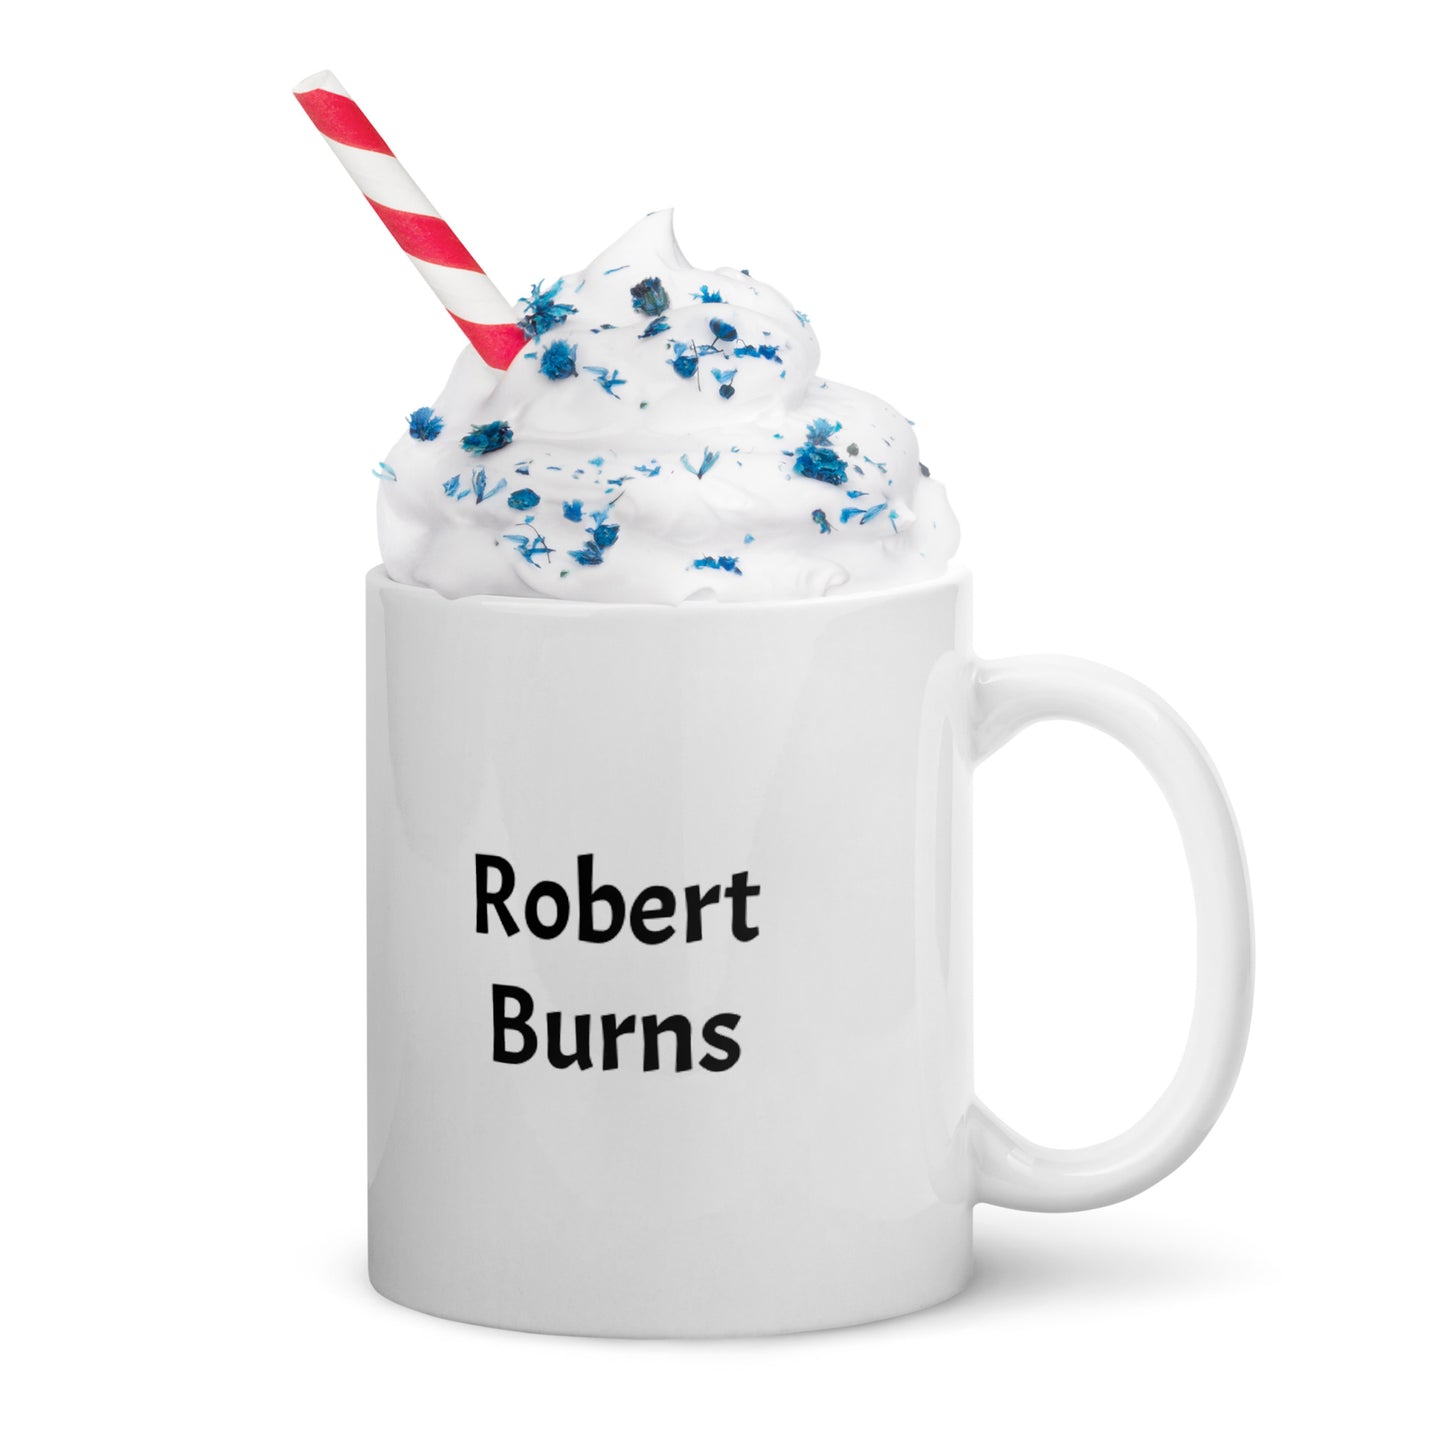 Robert Burns white glossy mug